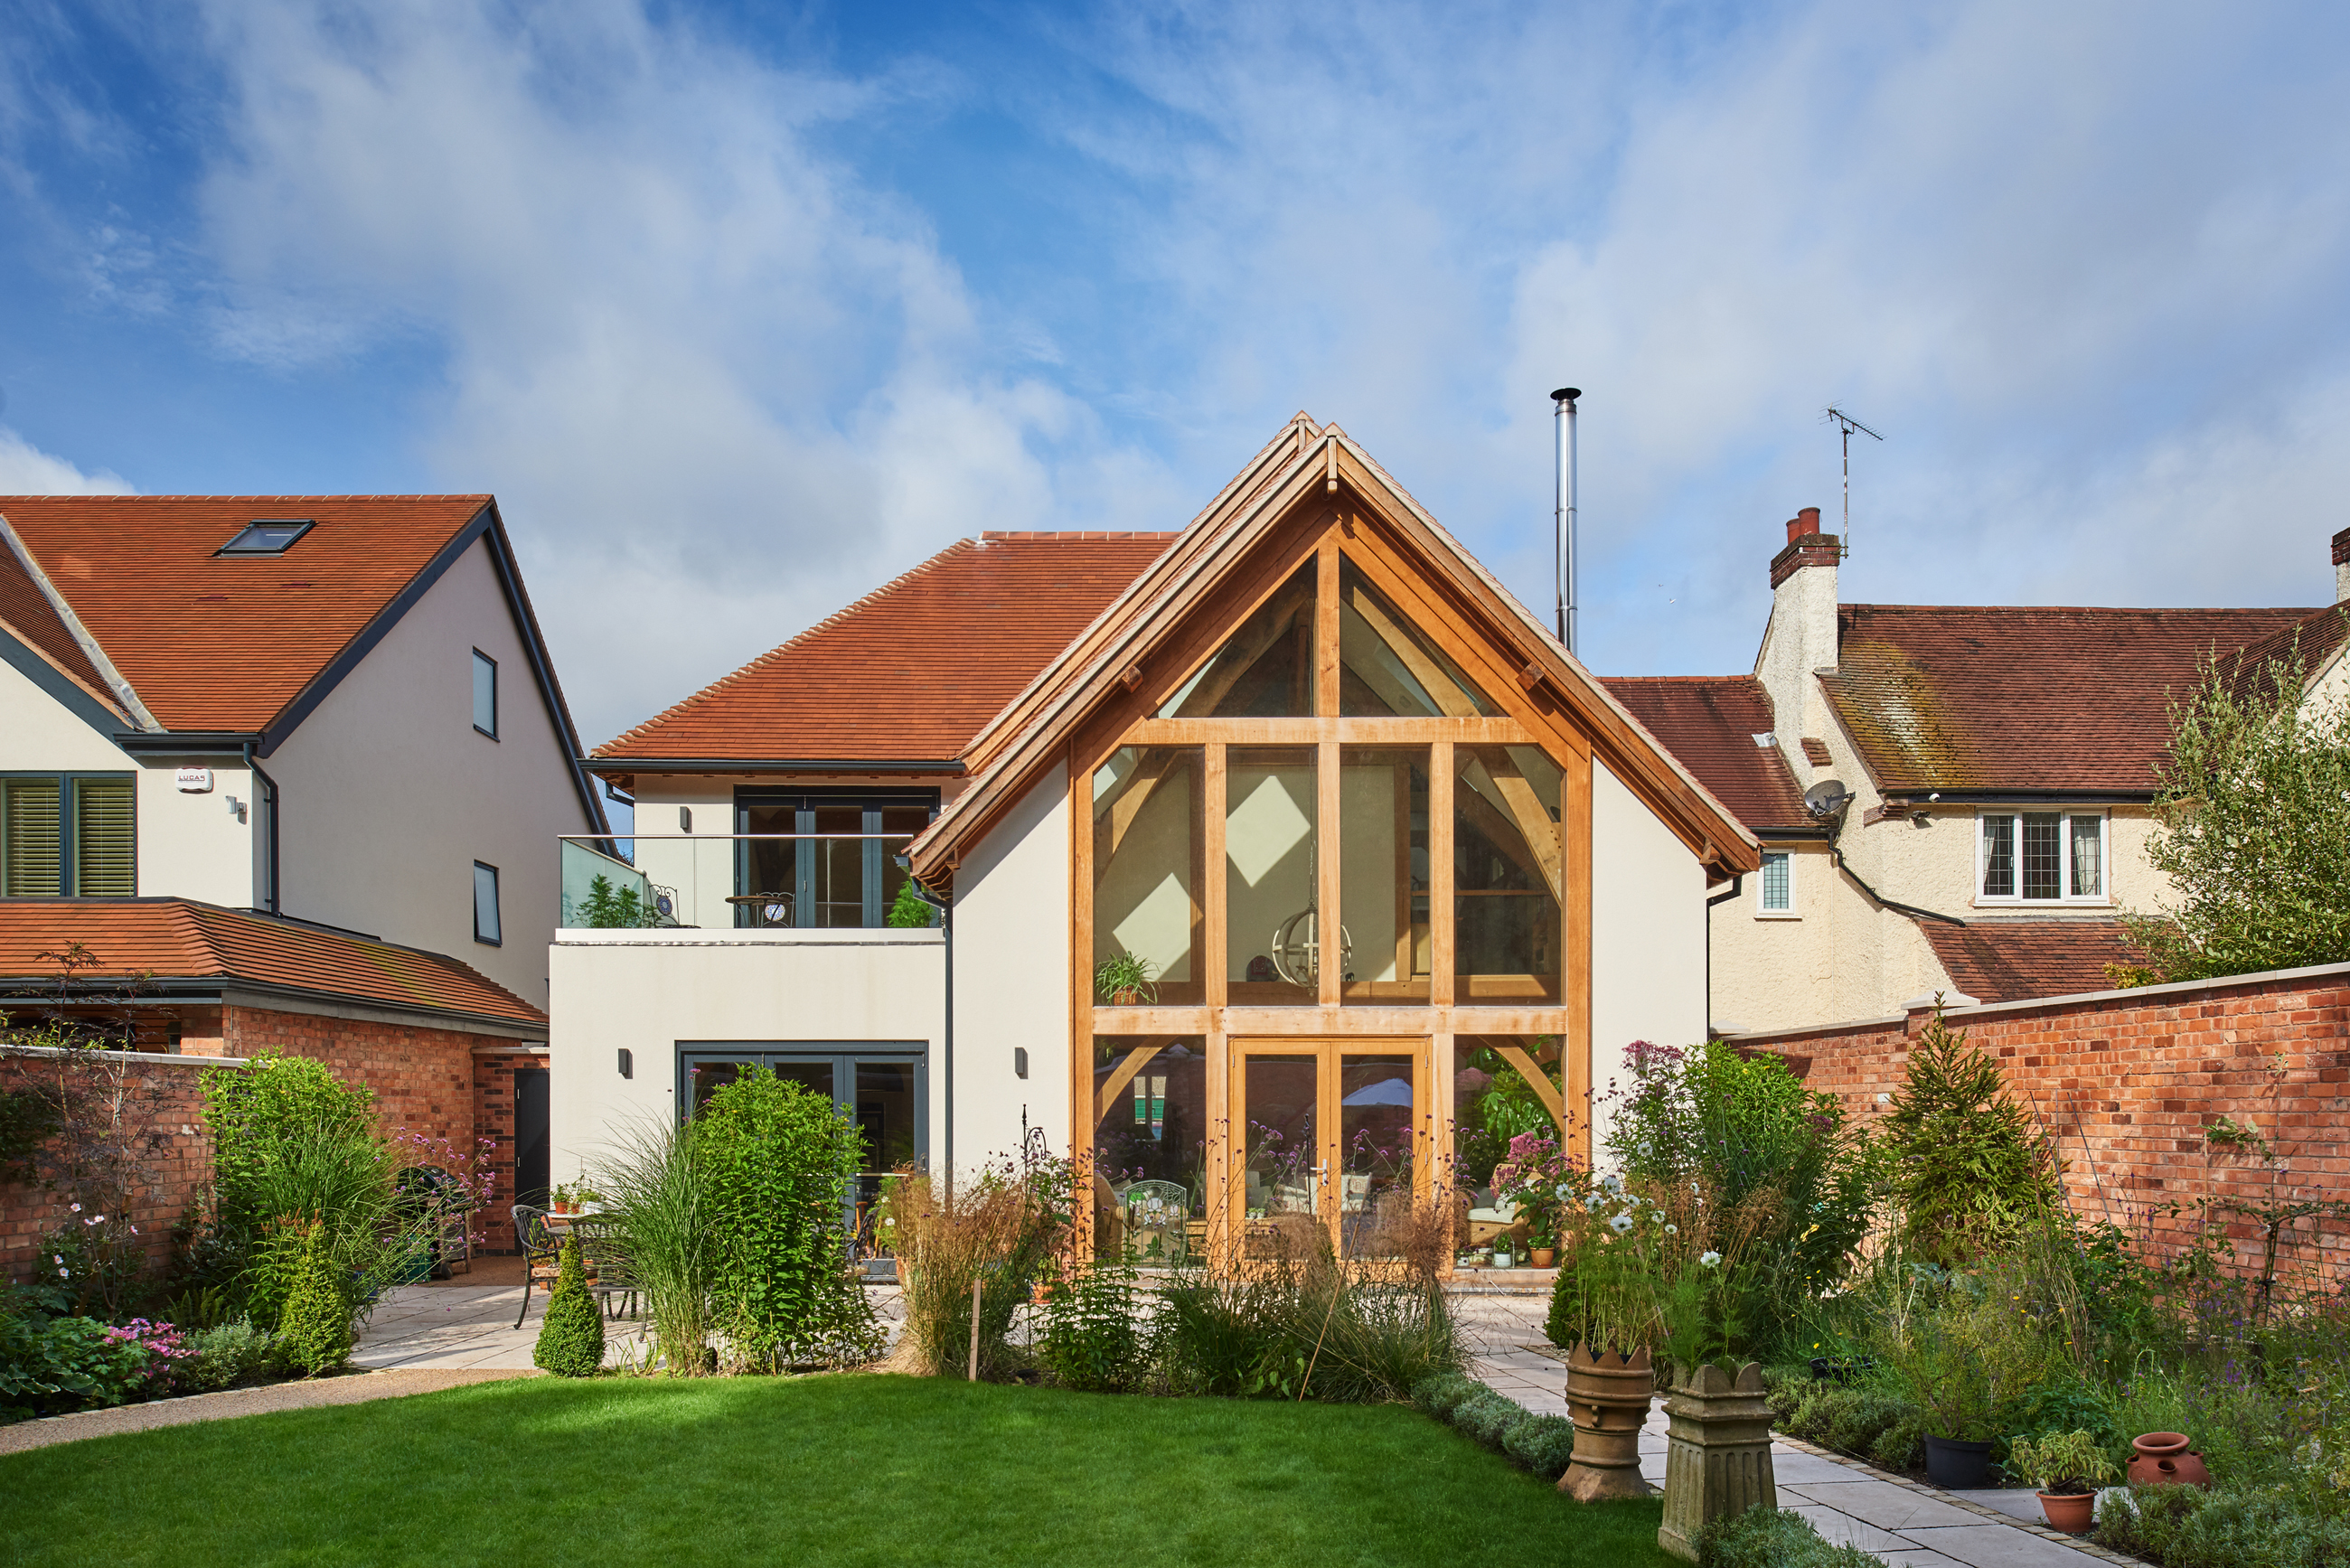 Kit Houses UK, Timber Frame Homes